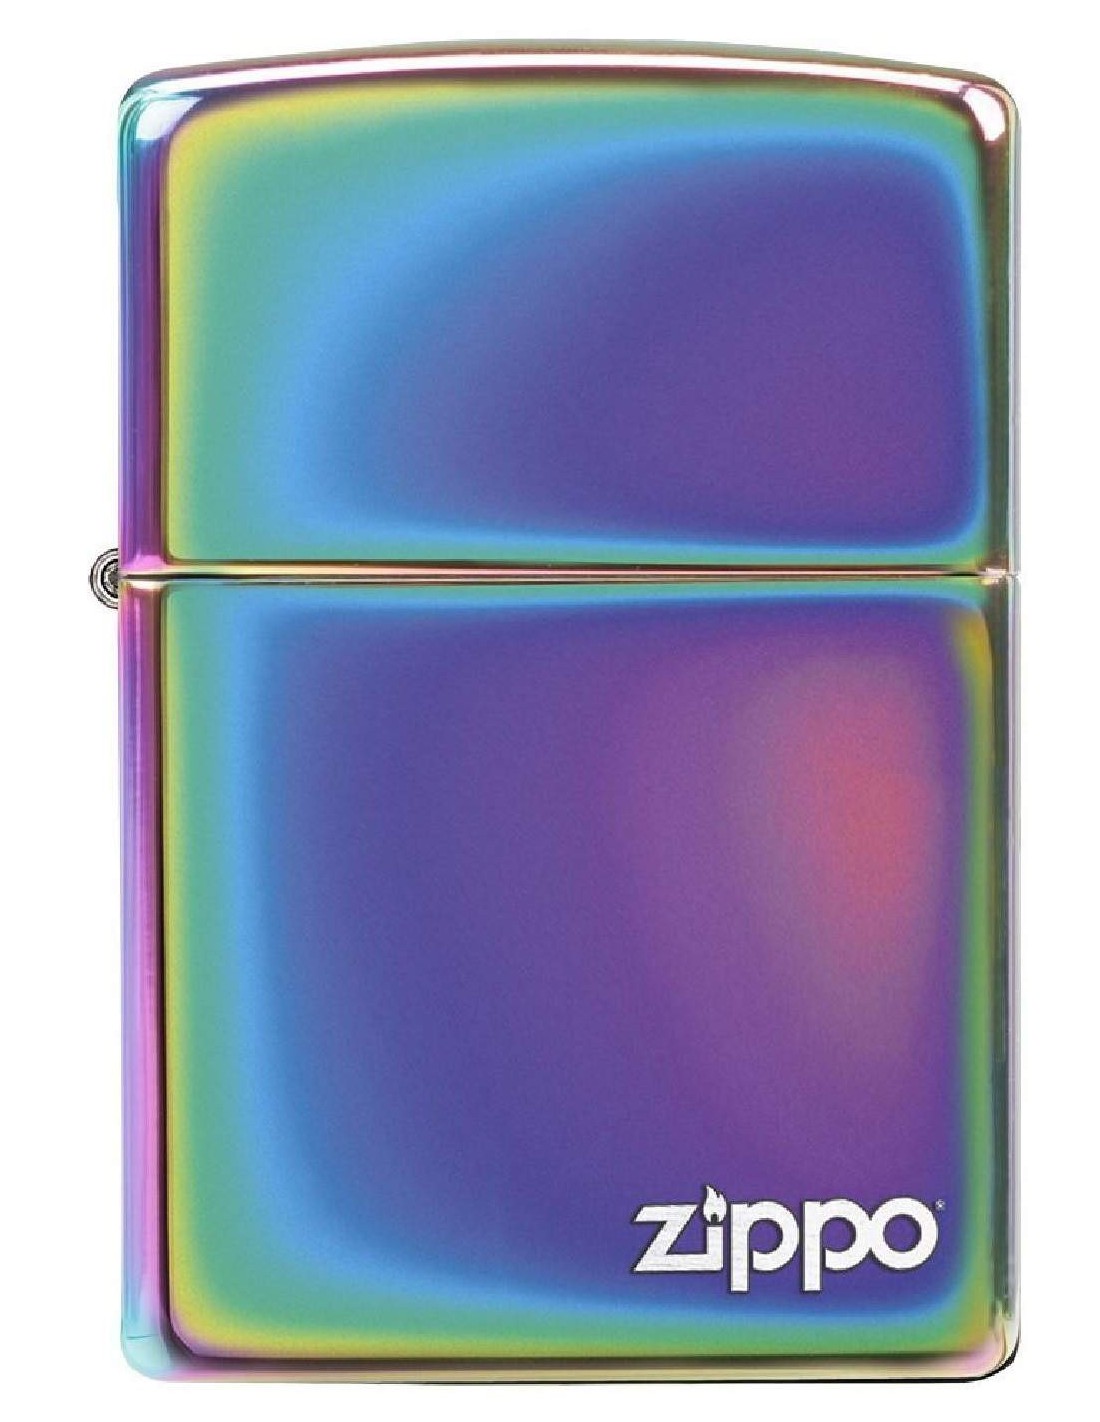 فندک زیپو Zippo 151ZL اصلی